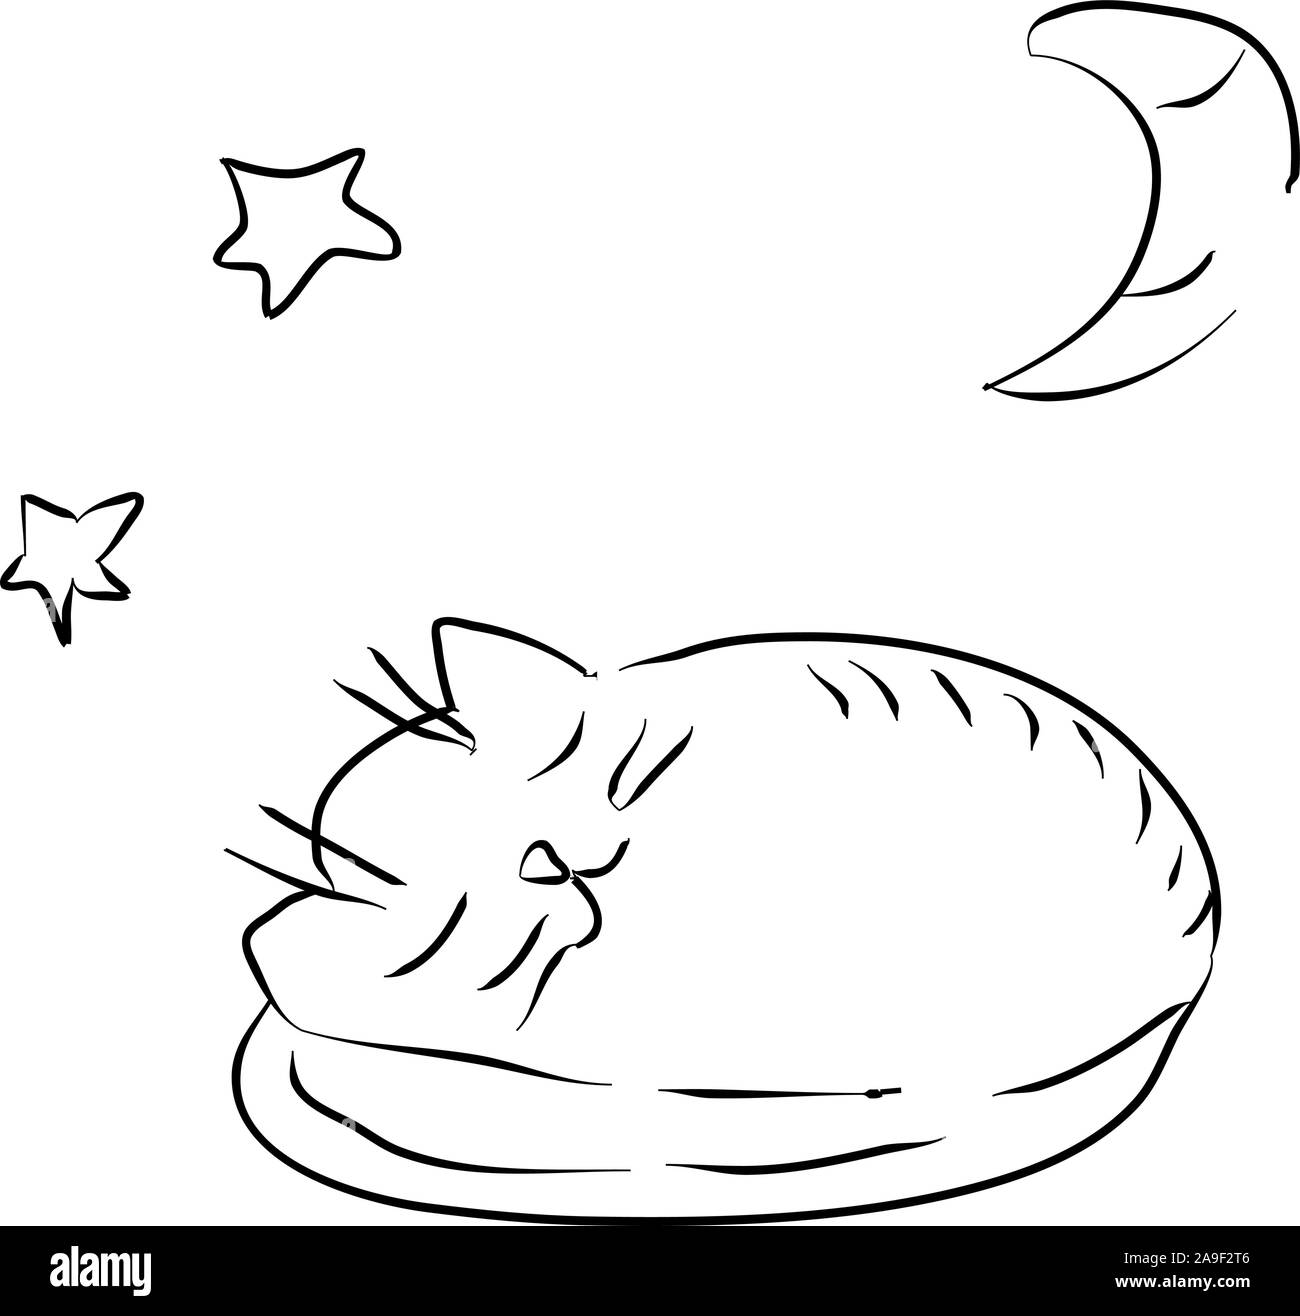 Gatto schizzo del sonno. Tecnica di disegno per i bambini. Buona notte. Illustrazione thread Illustrazione Vettoriale